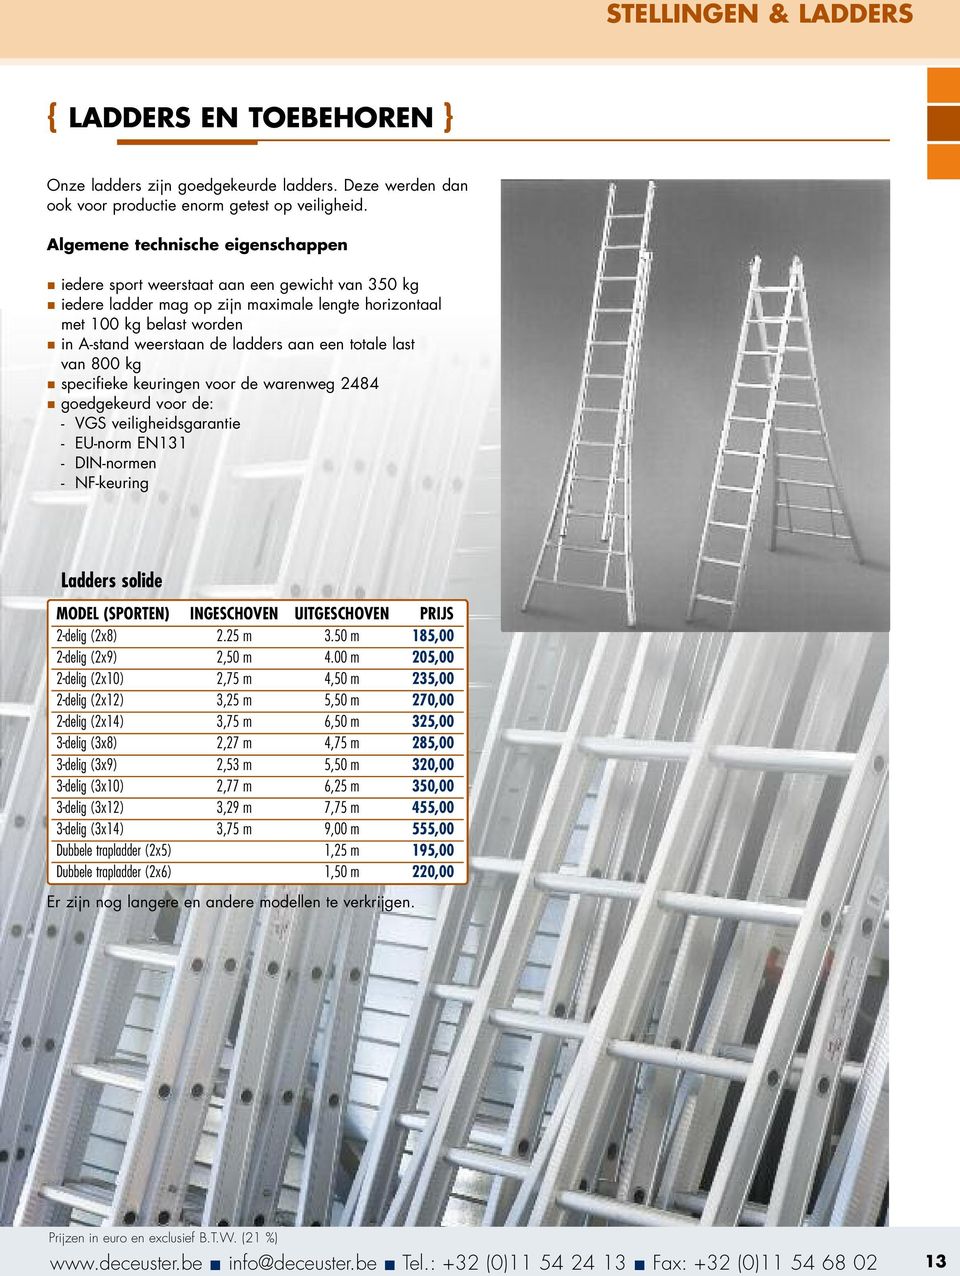 ladders aan een totale last van 800 kg n specifieke keuringen voor de warenweg 2484 n goedgekeurd voor de: - VGS veiligheidsgarantie - EU-norm EN131 - DIN-normen - NF-keuring Ladders solide MODEL